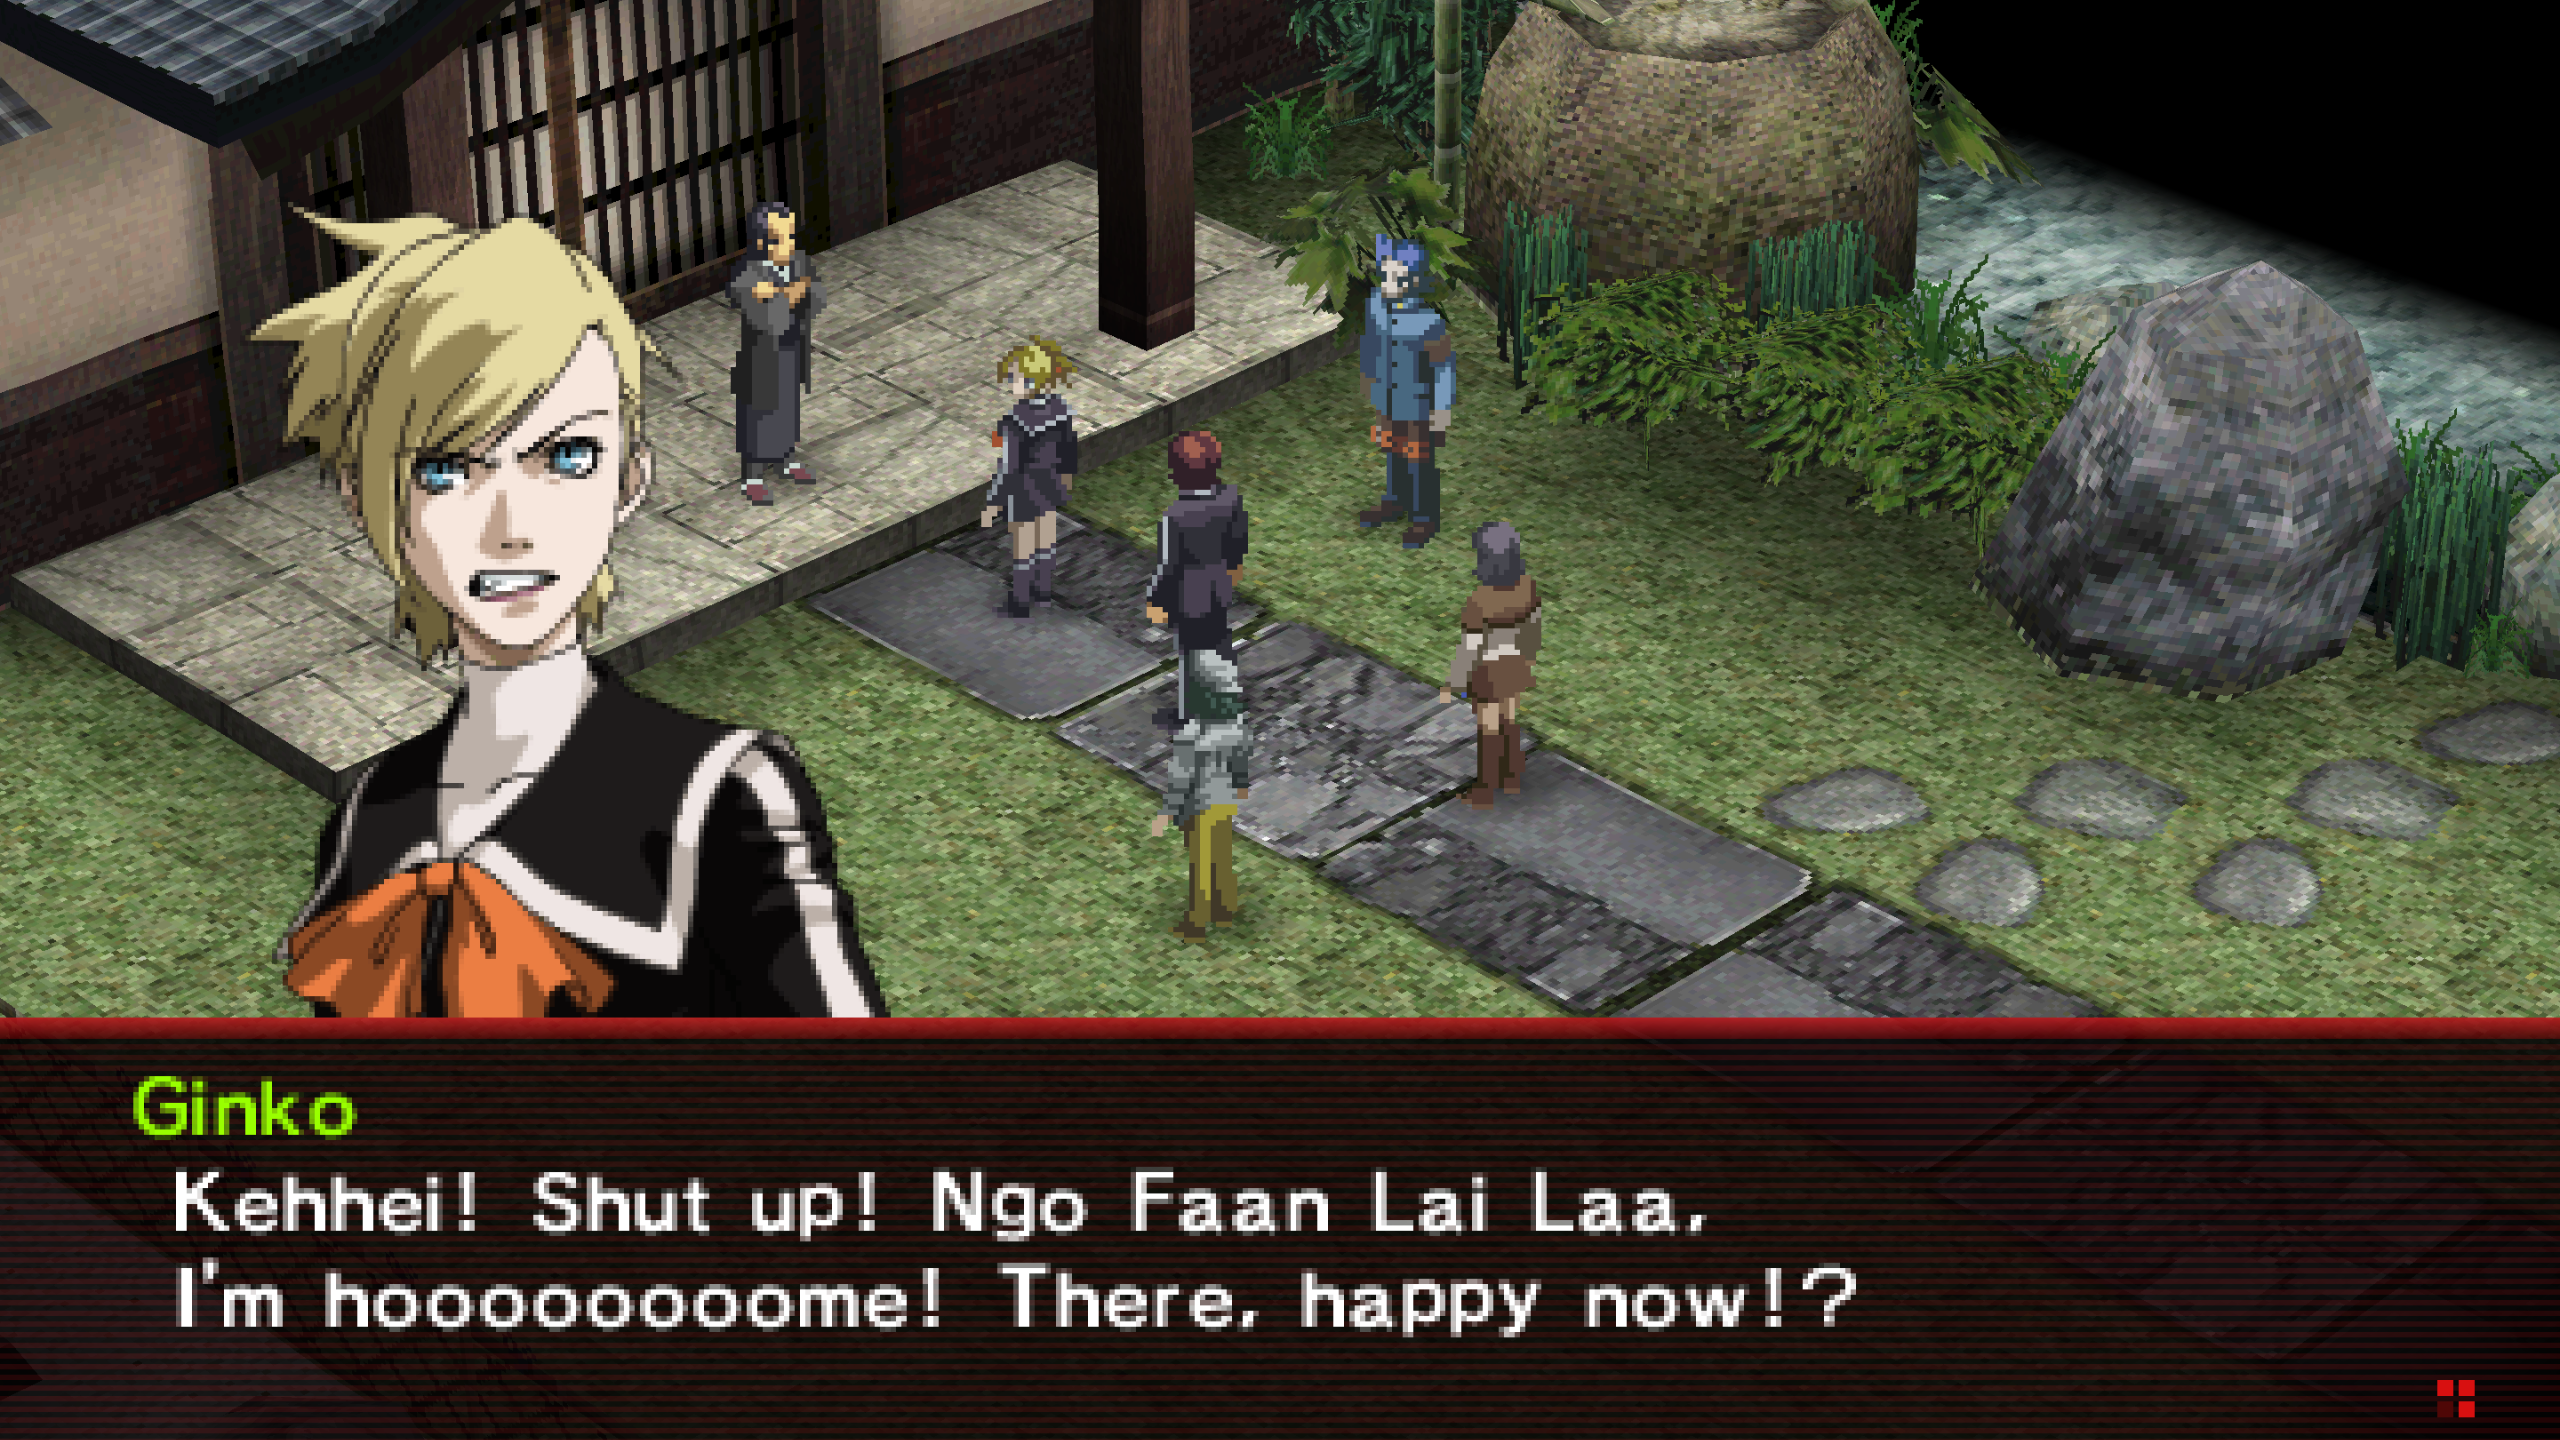 莉莎说粤语：“Ngo Faan Lai Laa”，即“我回来了”